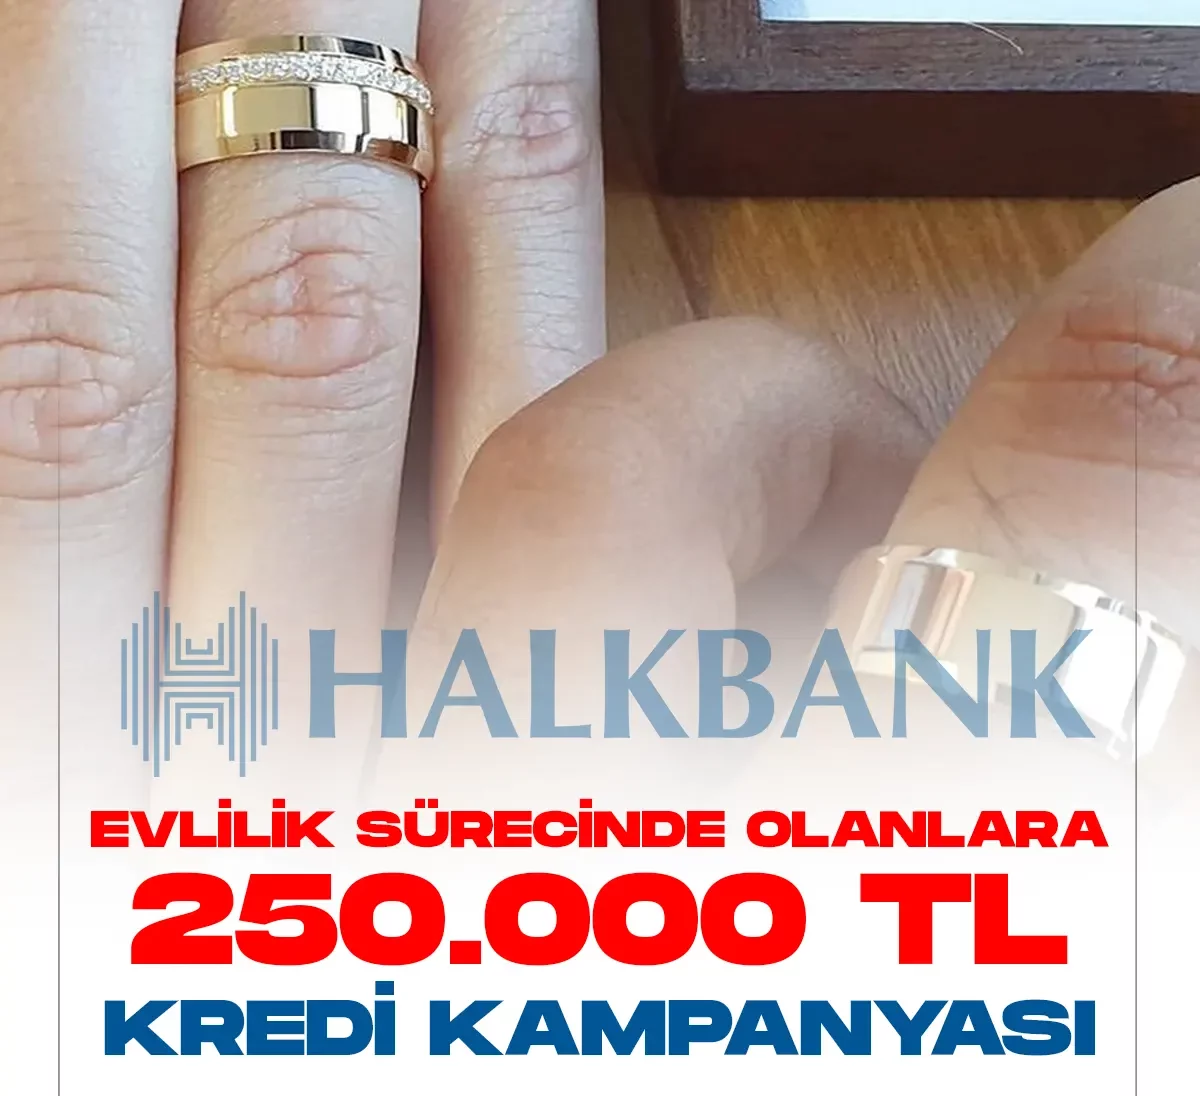 Halkbank evlenecek çiftlere 250 bin TL'ye kadar evlilik kredisi veriyor.